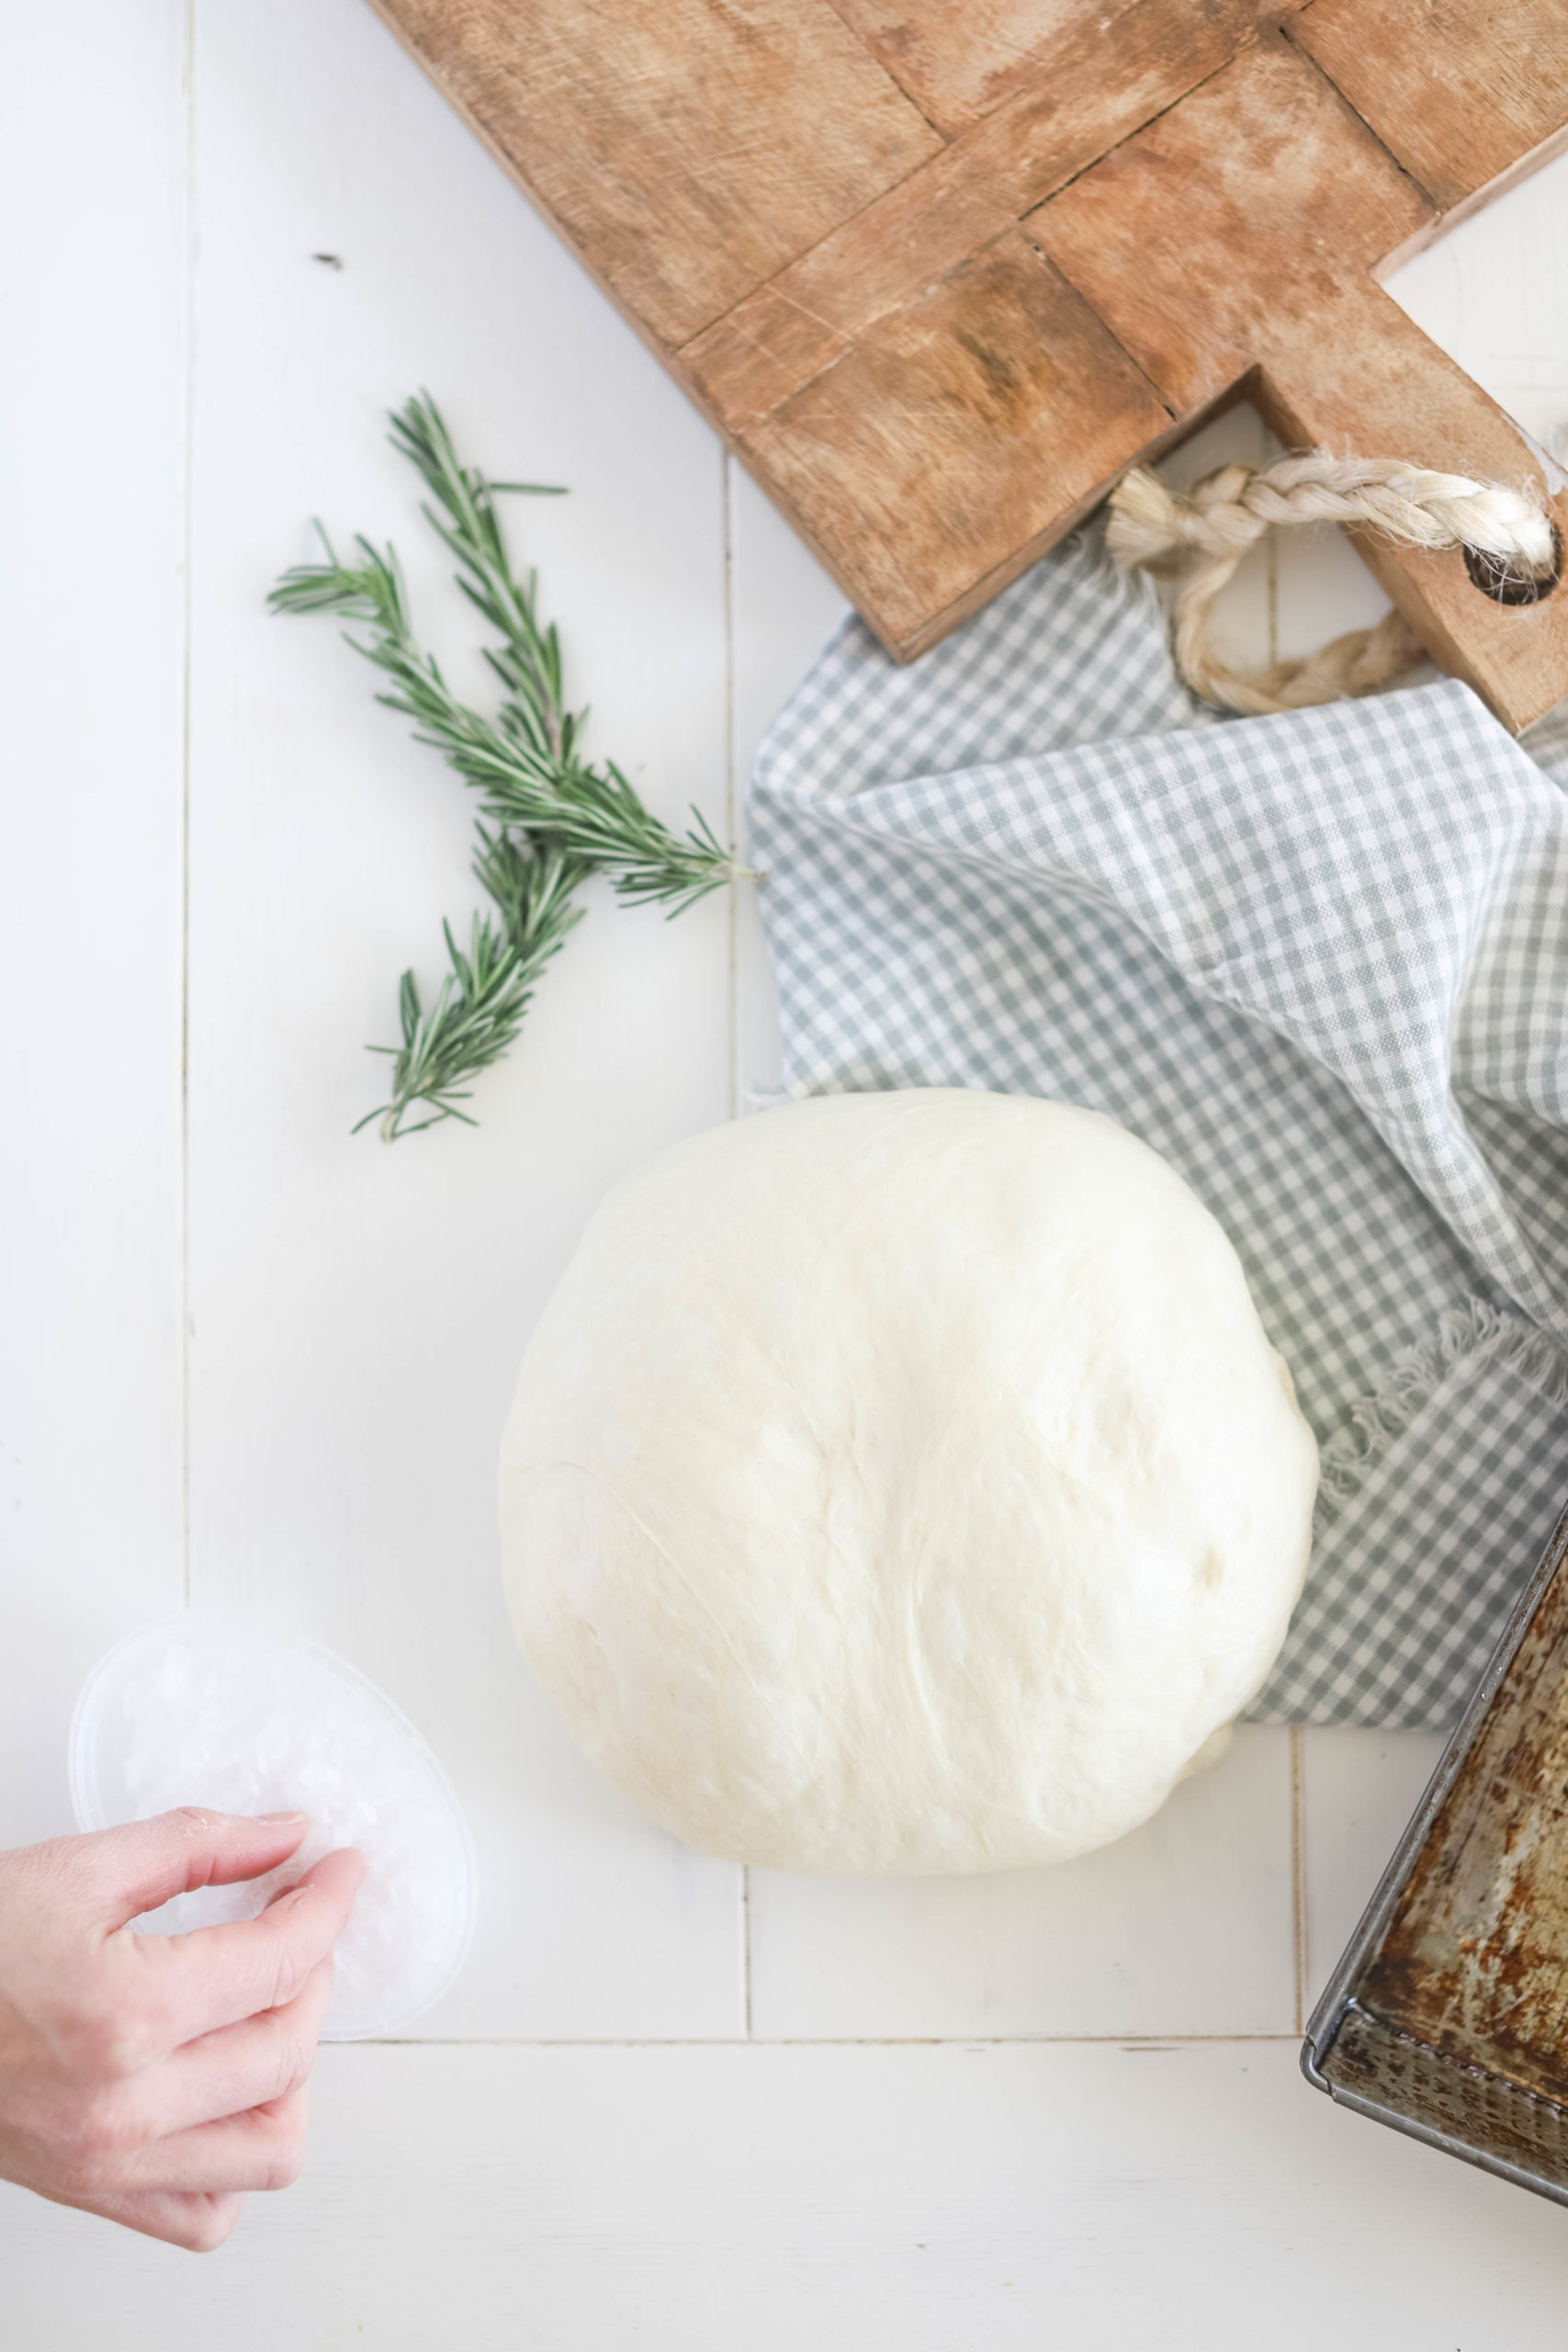 hand kneading focaccia dough